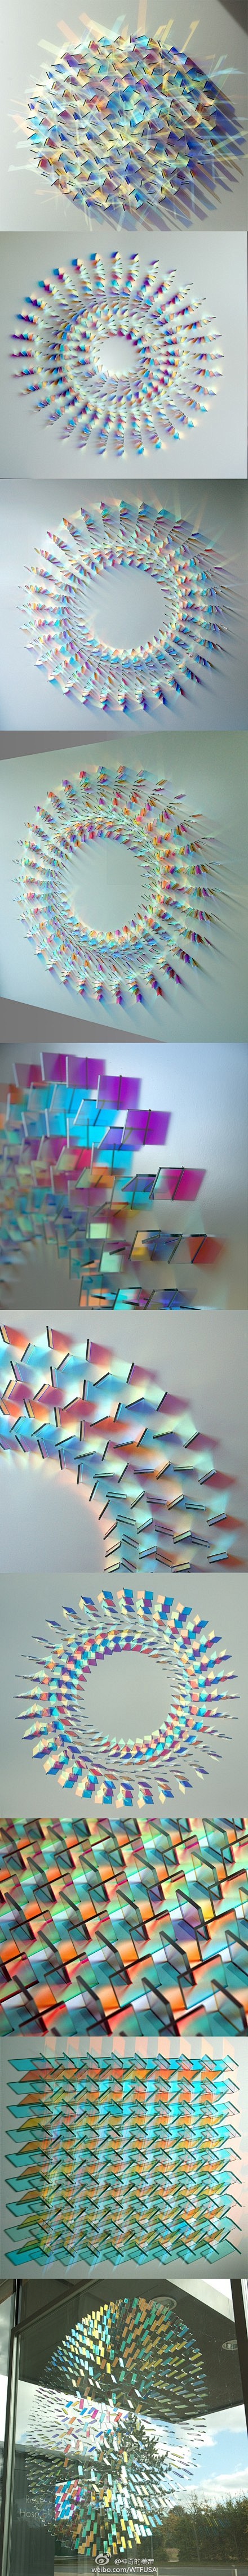 彩色玻璃艺术家Chris Wood的装置...